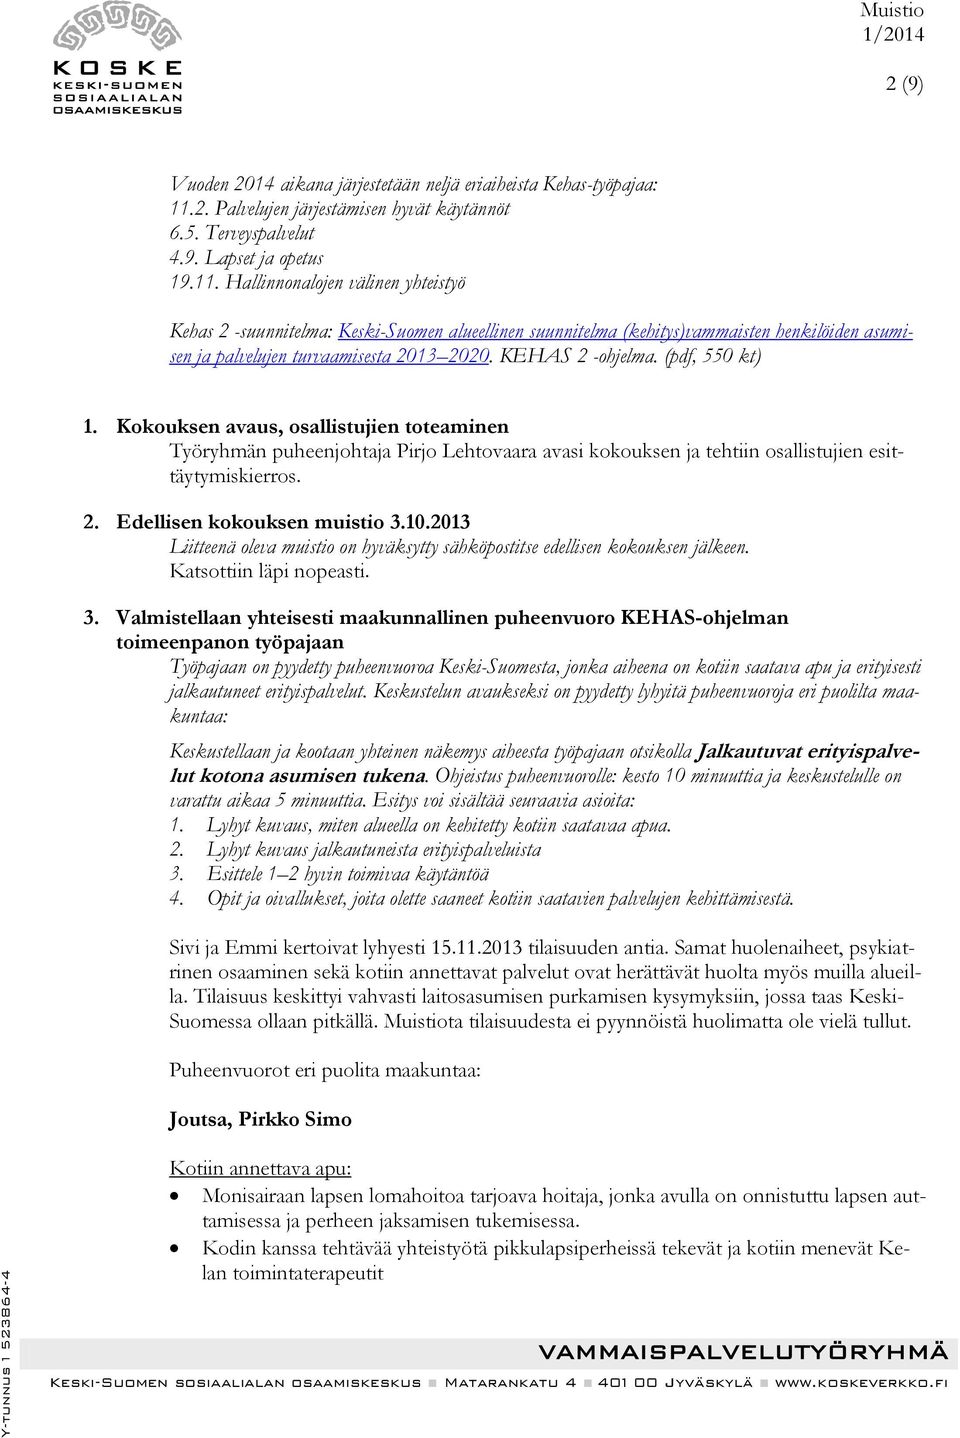 Hallinnonalojen välinen yhteistyö Kehas 2 -suunnitelma: Keski-Suomen alueellinen suunnitelma (kehitys)vammaisten henkilöiden asumisen ja palvelujen turvaamisesta 2013 2020. KEHAS 2 -ohjelma.